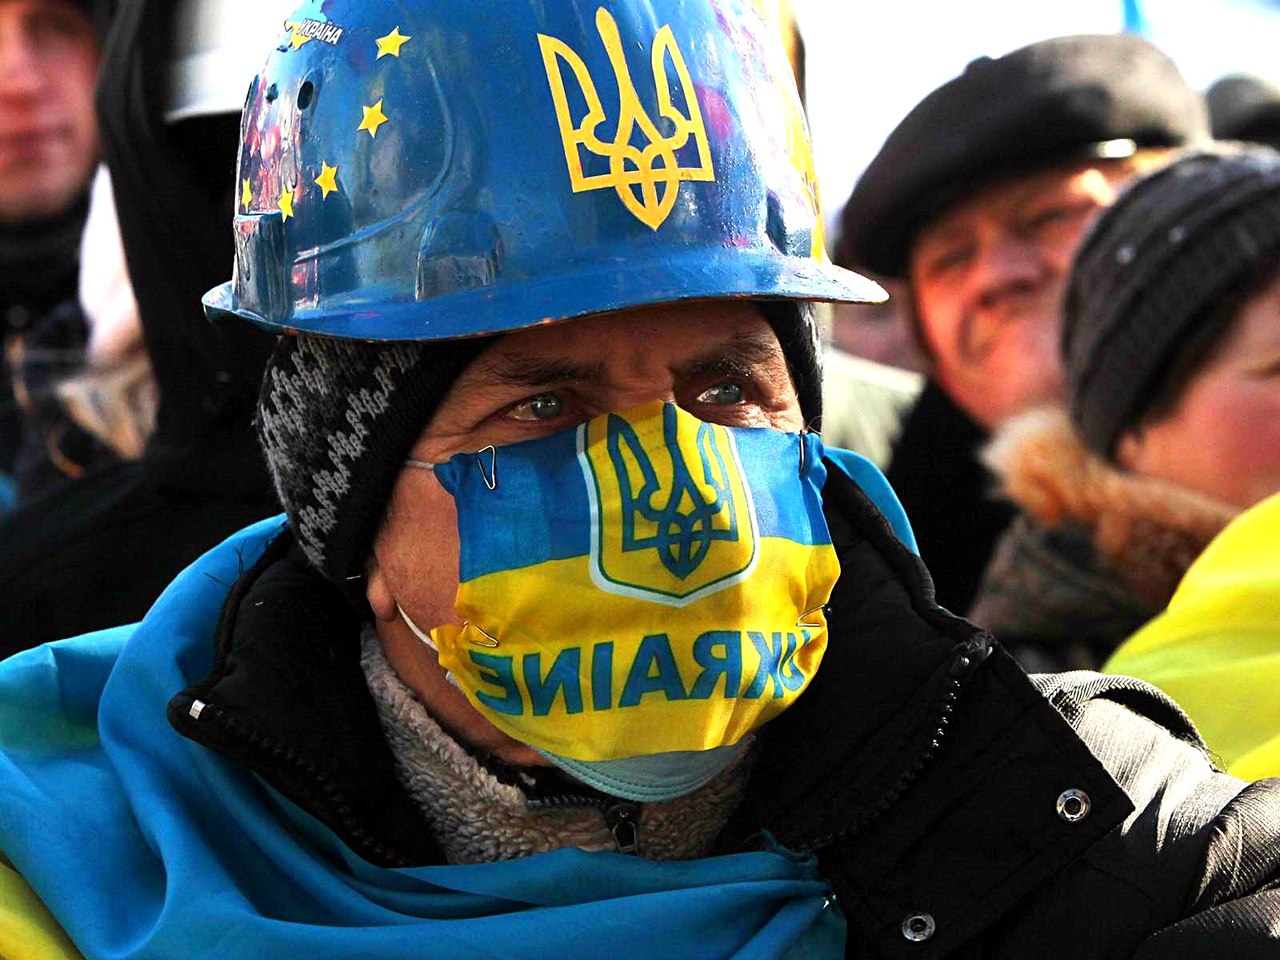 Северные украинцы. Майдан 2014 кастрюлеголовые. Майданутые украинцы. Кастрюли на Майдане.